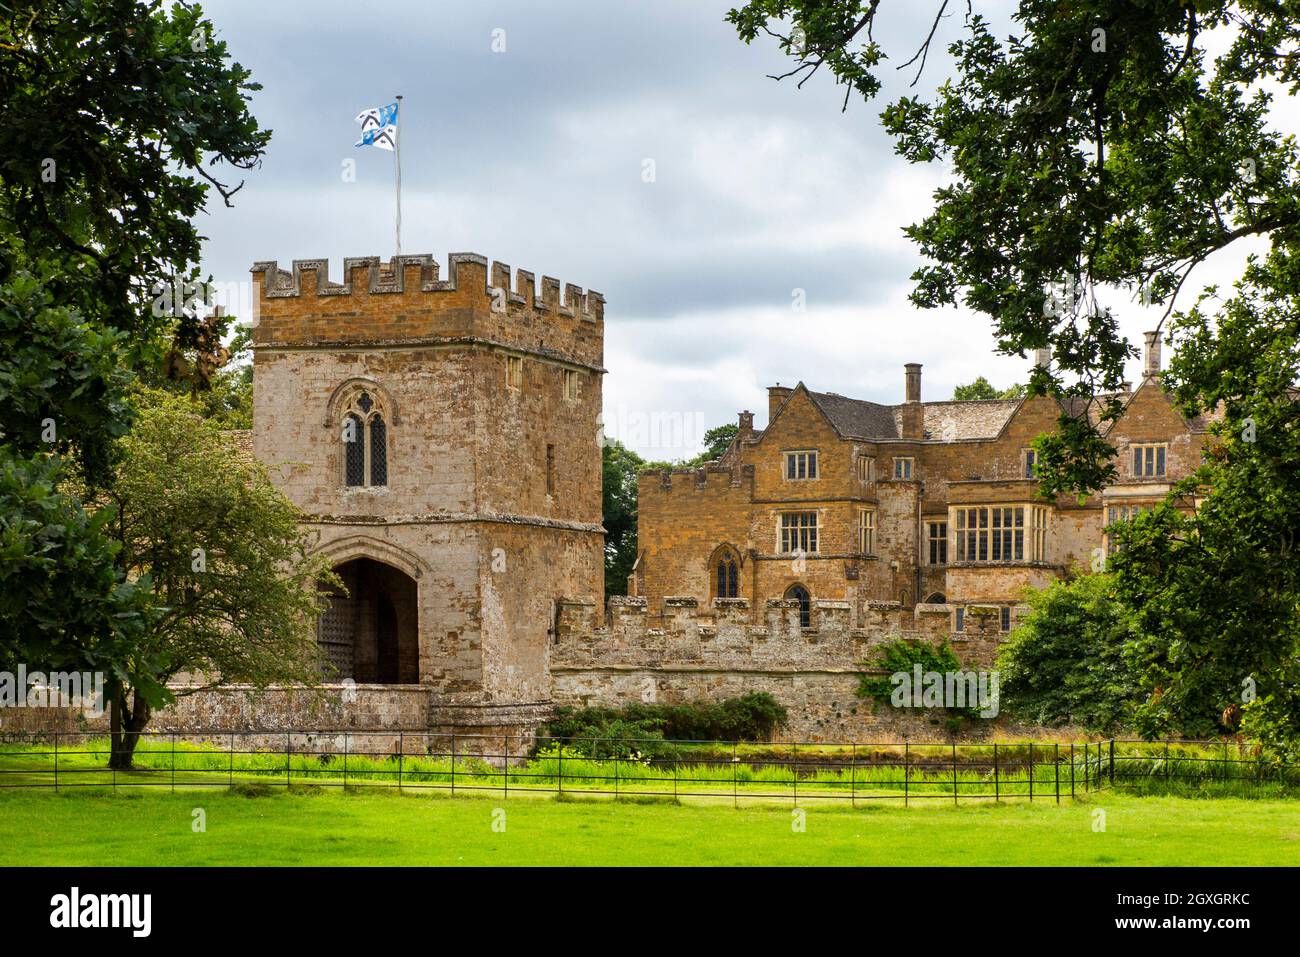 Royaume-Uni, Angleterre, Oxfordshire, Banbury, Broughton, gatehouse et château, manoir médiéval fortifié, qui abrite la famille des Feinnes Banque D'Images